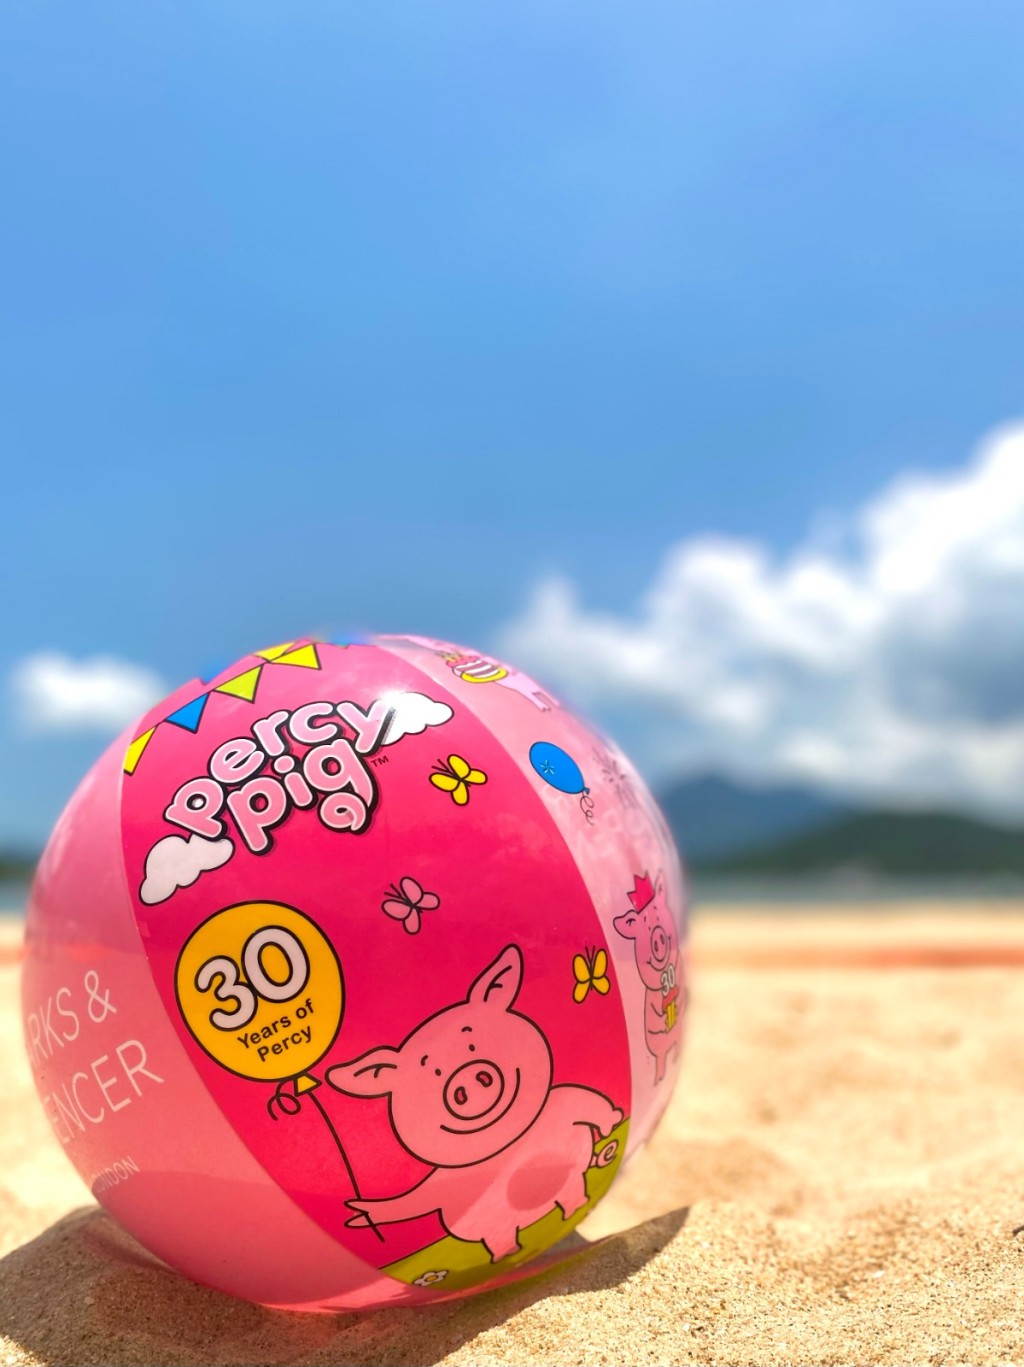 M&S會員在八月底前的每個周末，於M&S購物滿$330可獲贈價值$90的限量版Percy小豬沙灘球一個。